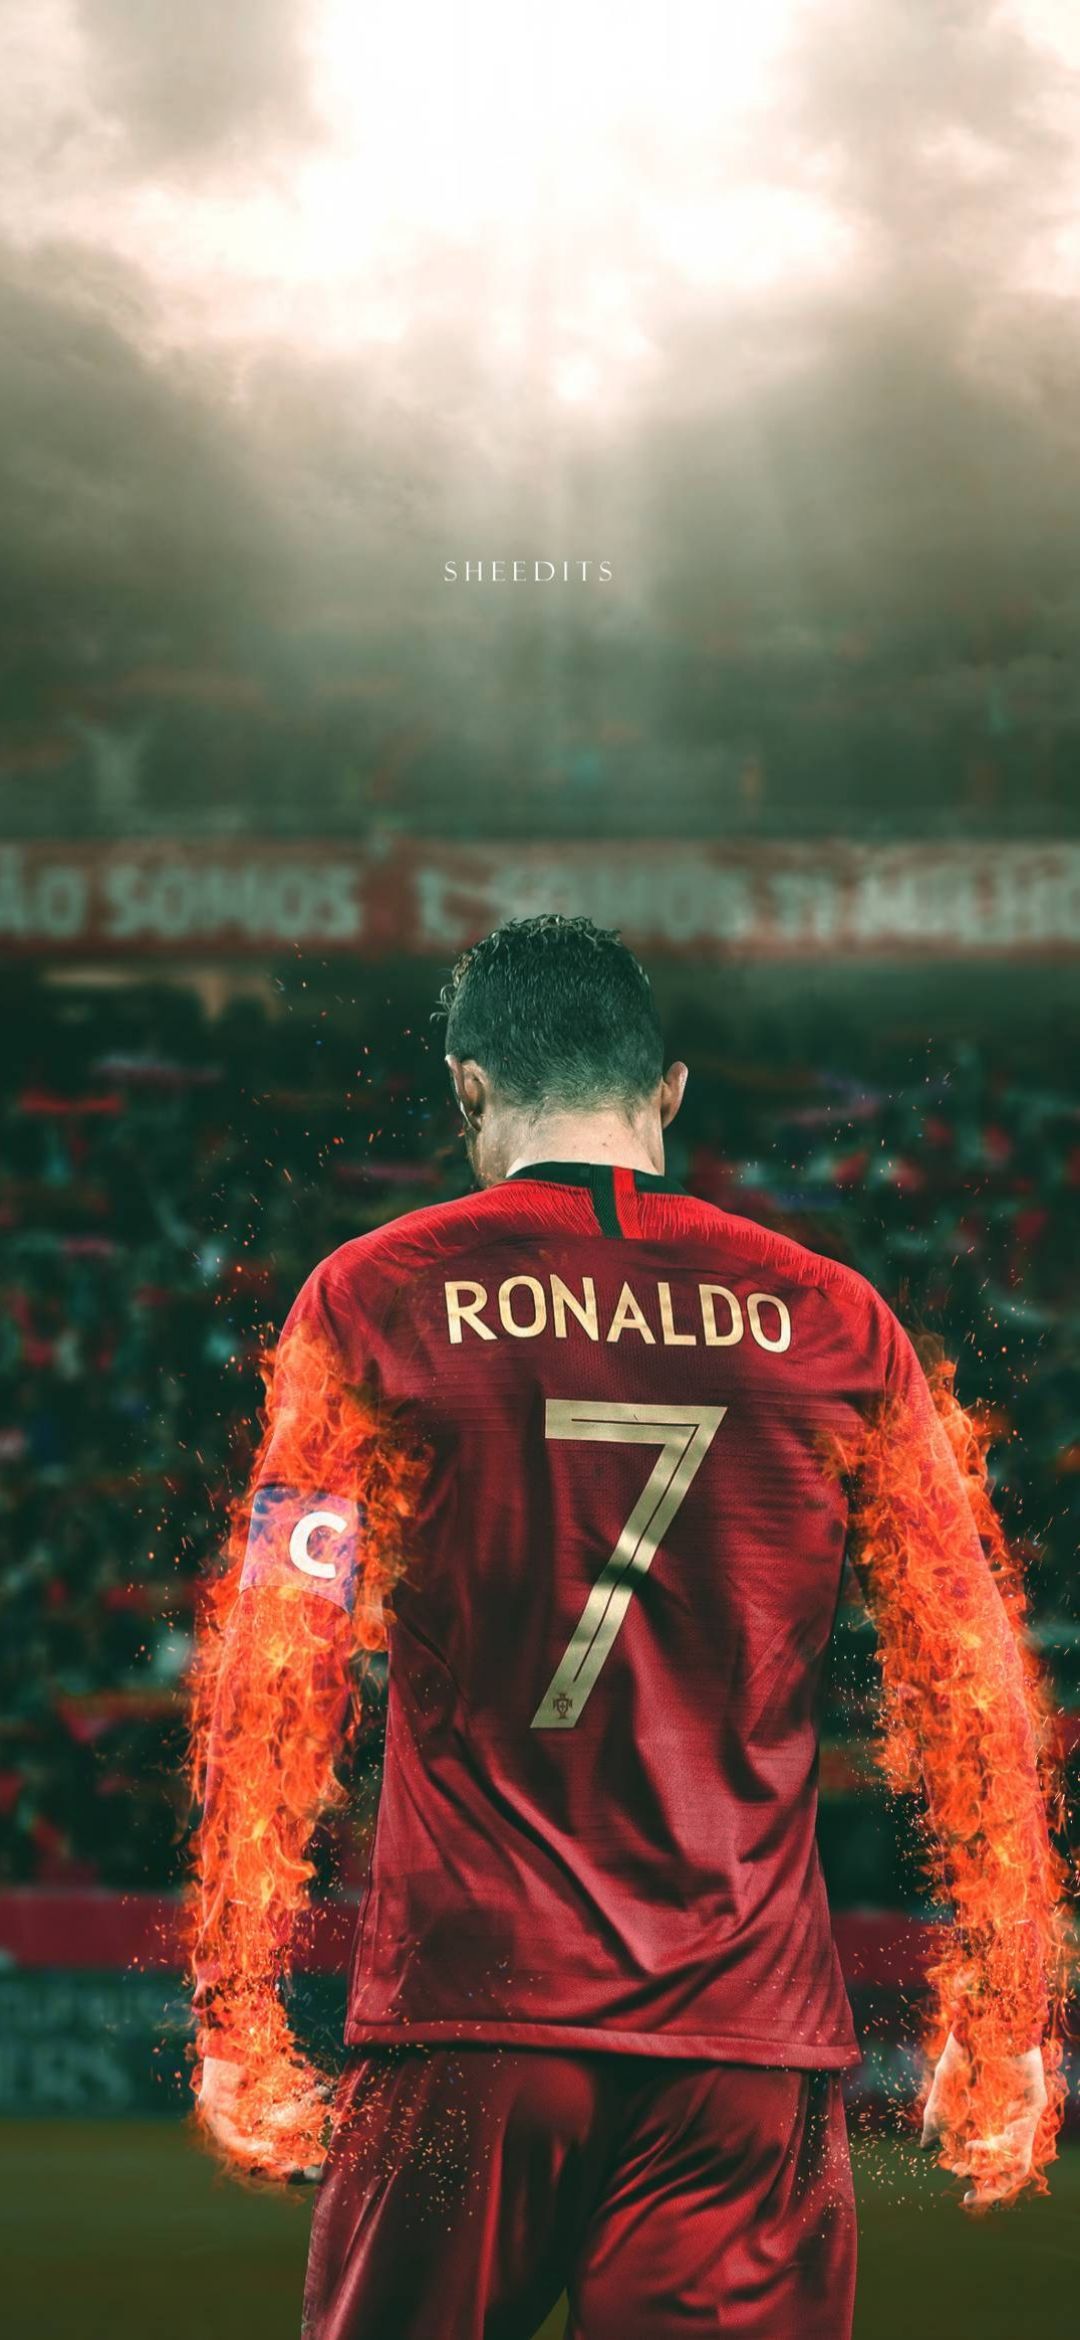 F. Ronaldo wallpaper, Cristiano ronaldo wallpaper, Cristiano ronaldo